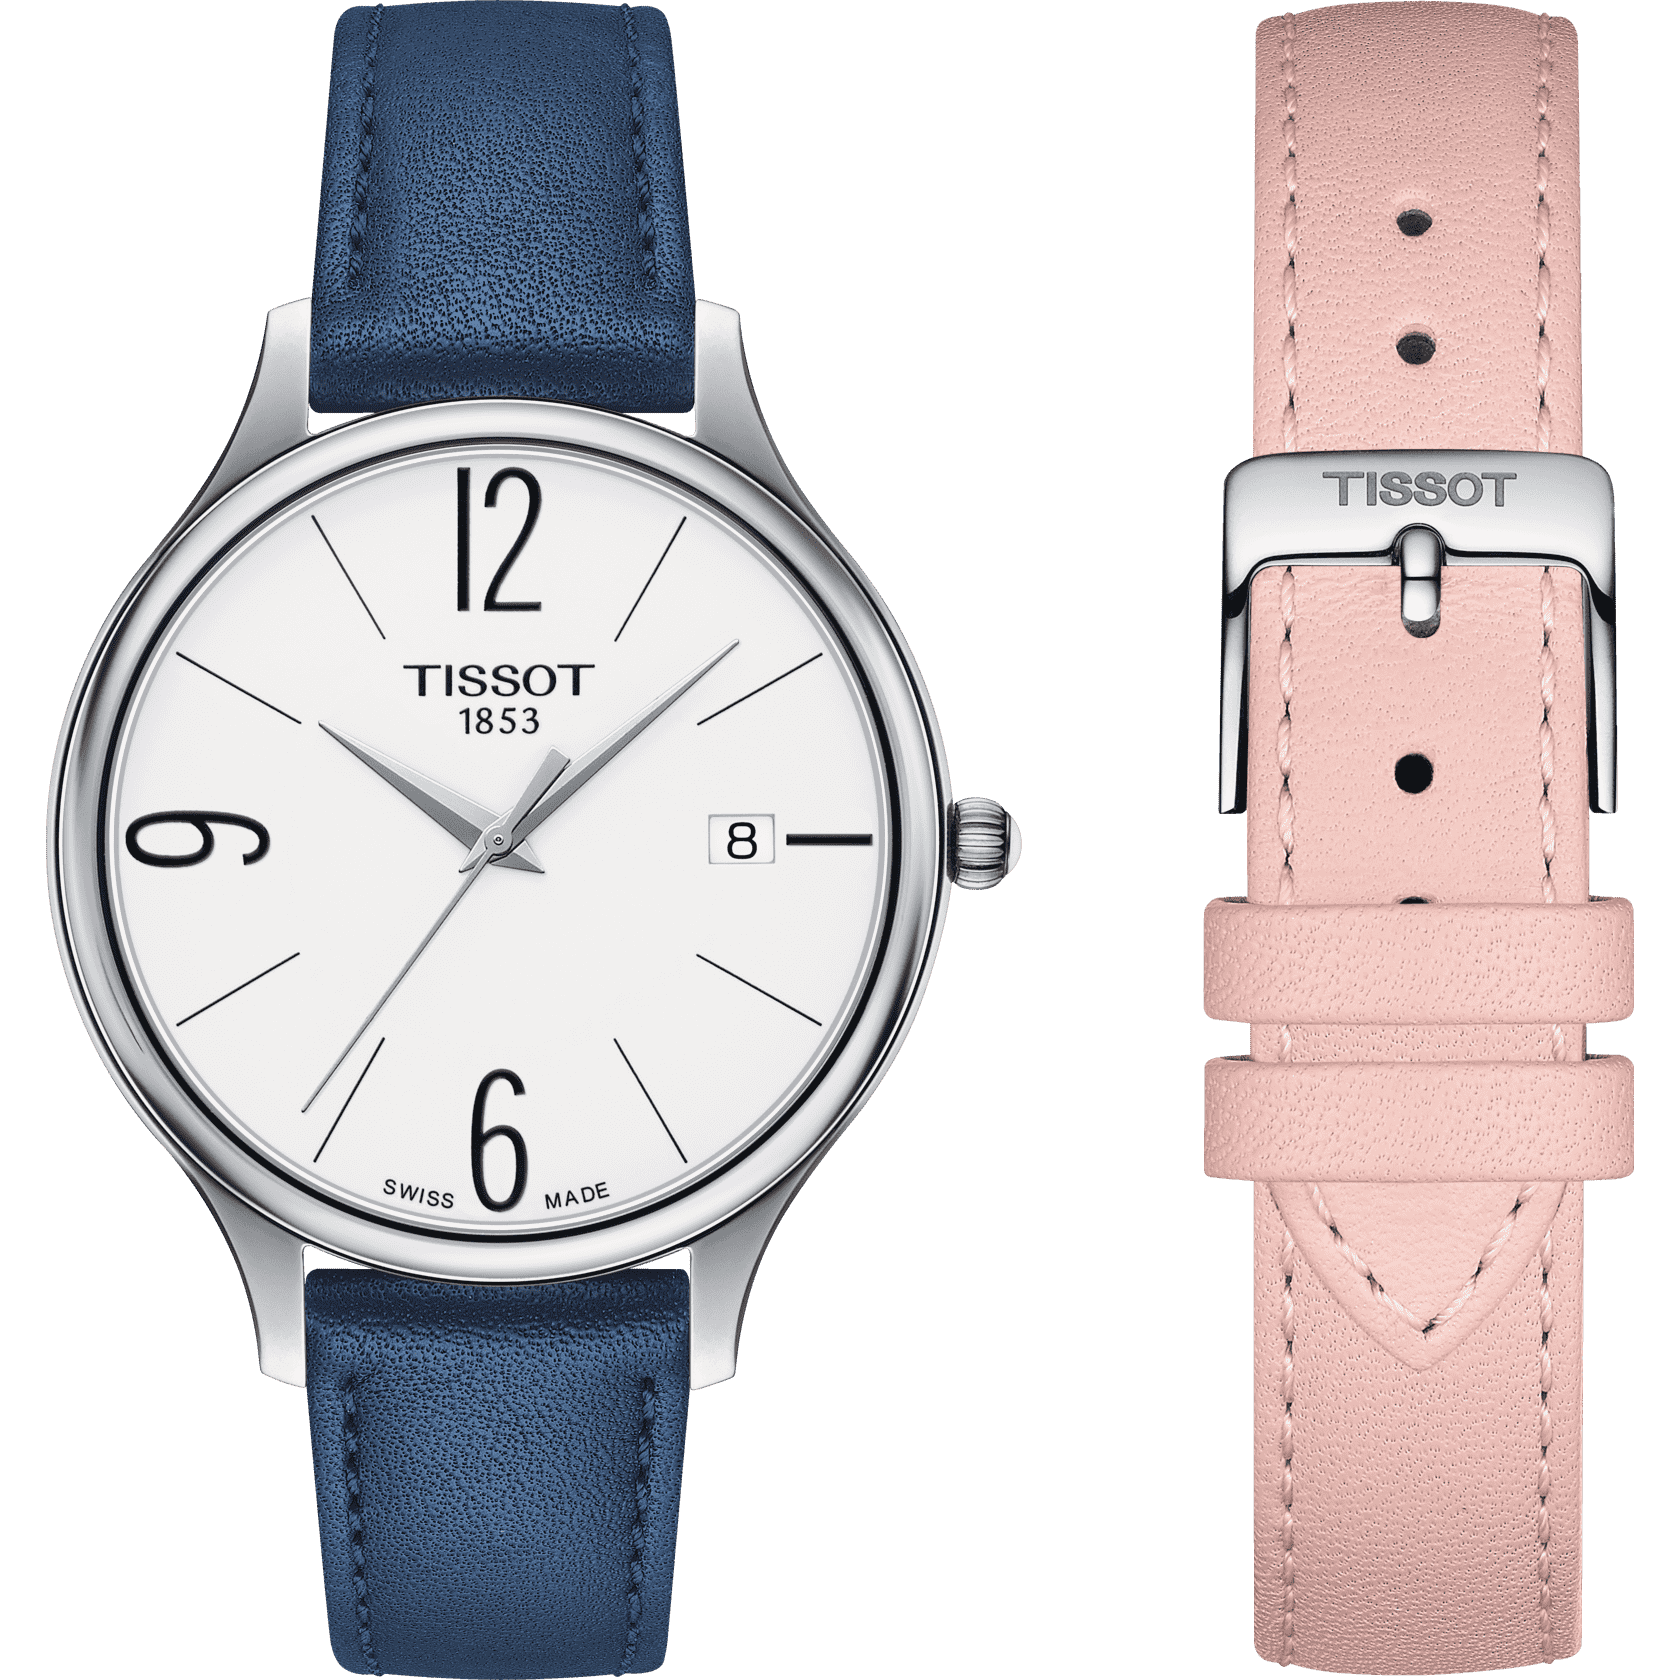 Nomos Watch Replica Where Can I Buy 2018 Forum